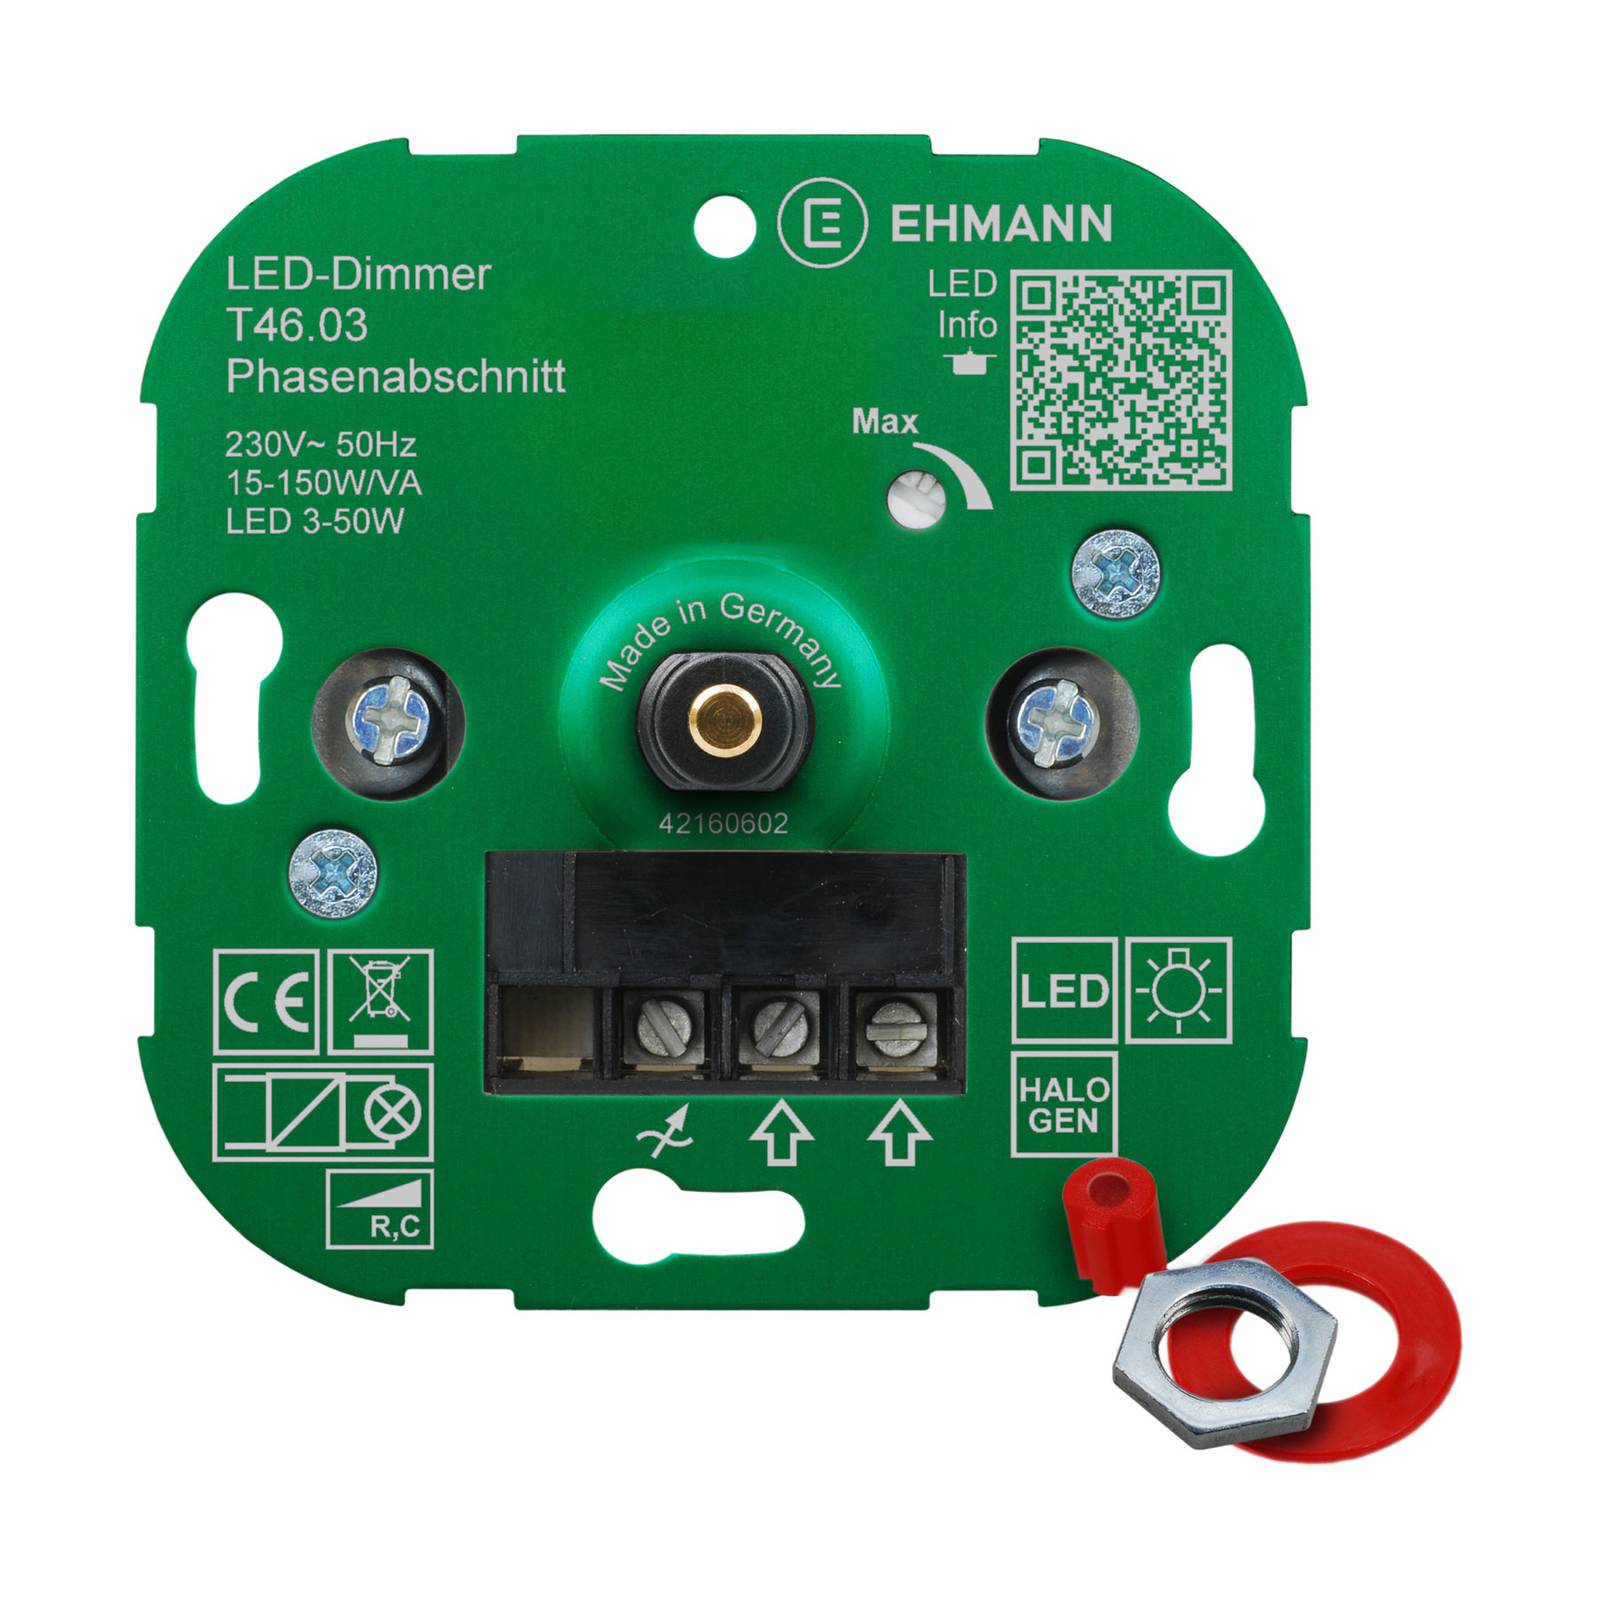 EHMANN T46 LED-Dimmer Phasenabschnitt, 3-50W